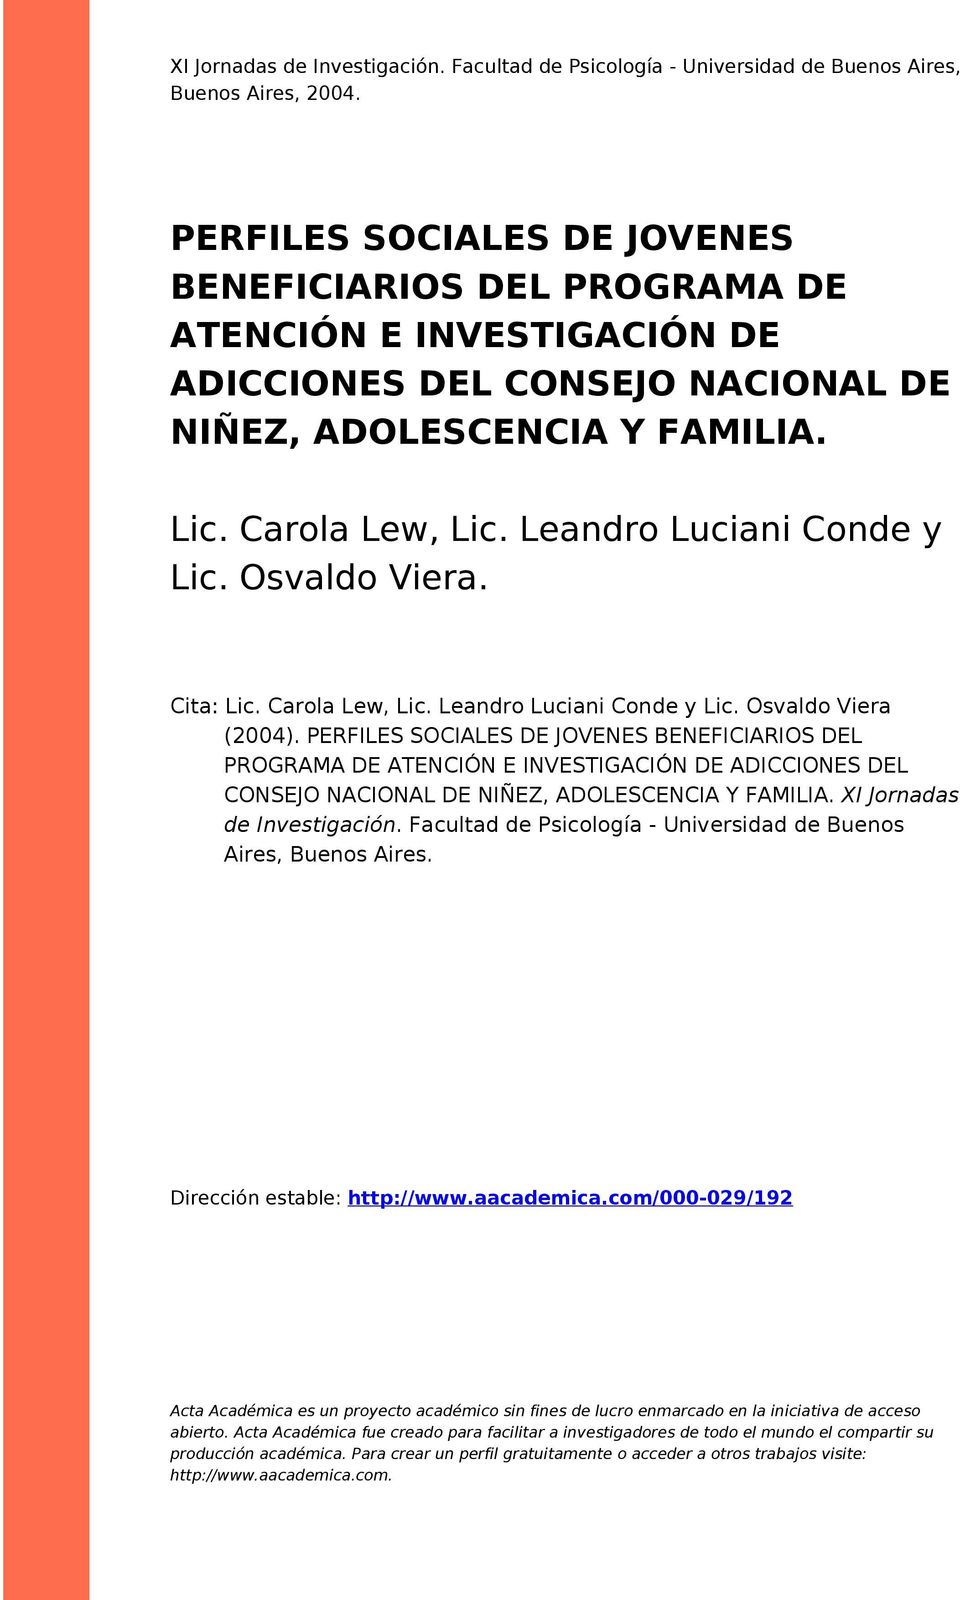 Leandro Luciani Conde y Lic. Osvaldo Viera. Cita: Lic. Carola Lew, Lic. Leandro Luciani Conde y Lic. Osvaldo Viera (2004).